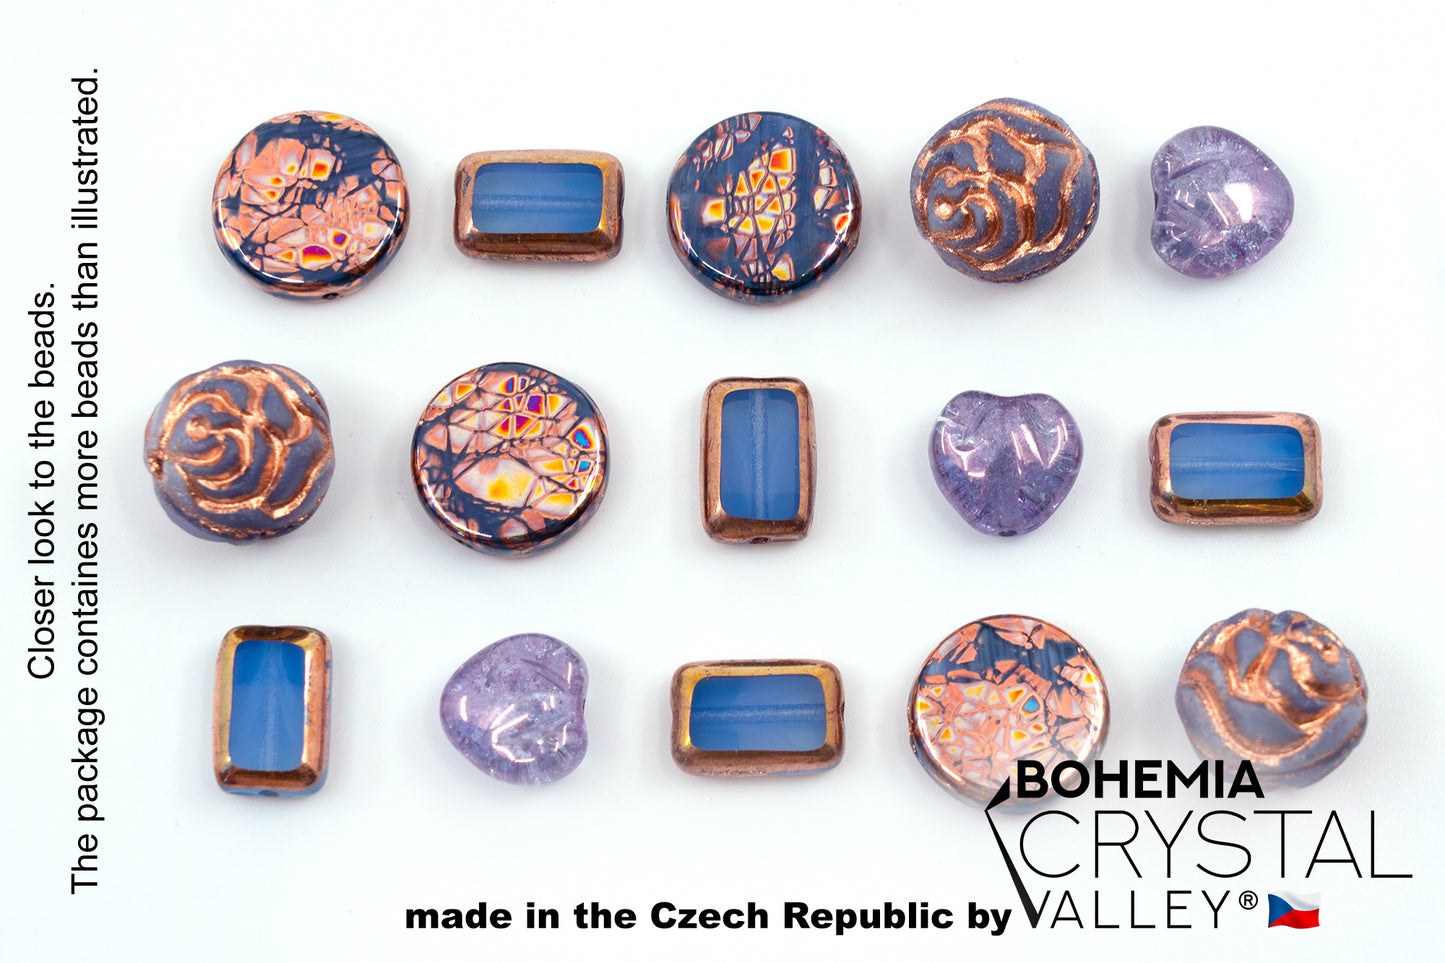 Glas-FOCAL-Perlenmischung mit Rosen, Tischschliff- und rissigen tschechischen Perlen, PG Blau Kupfer Violett